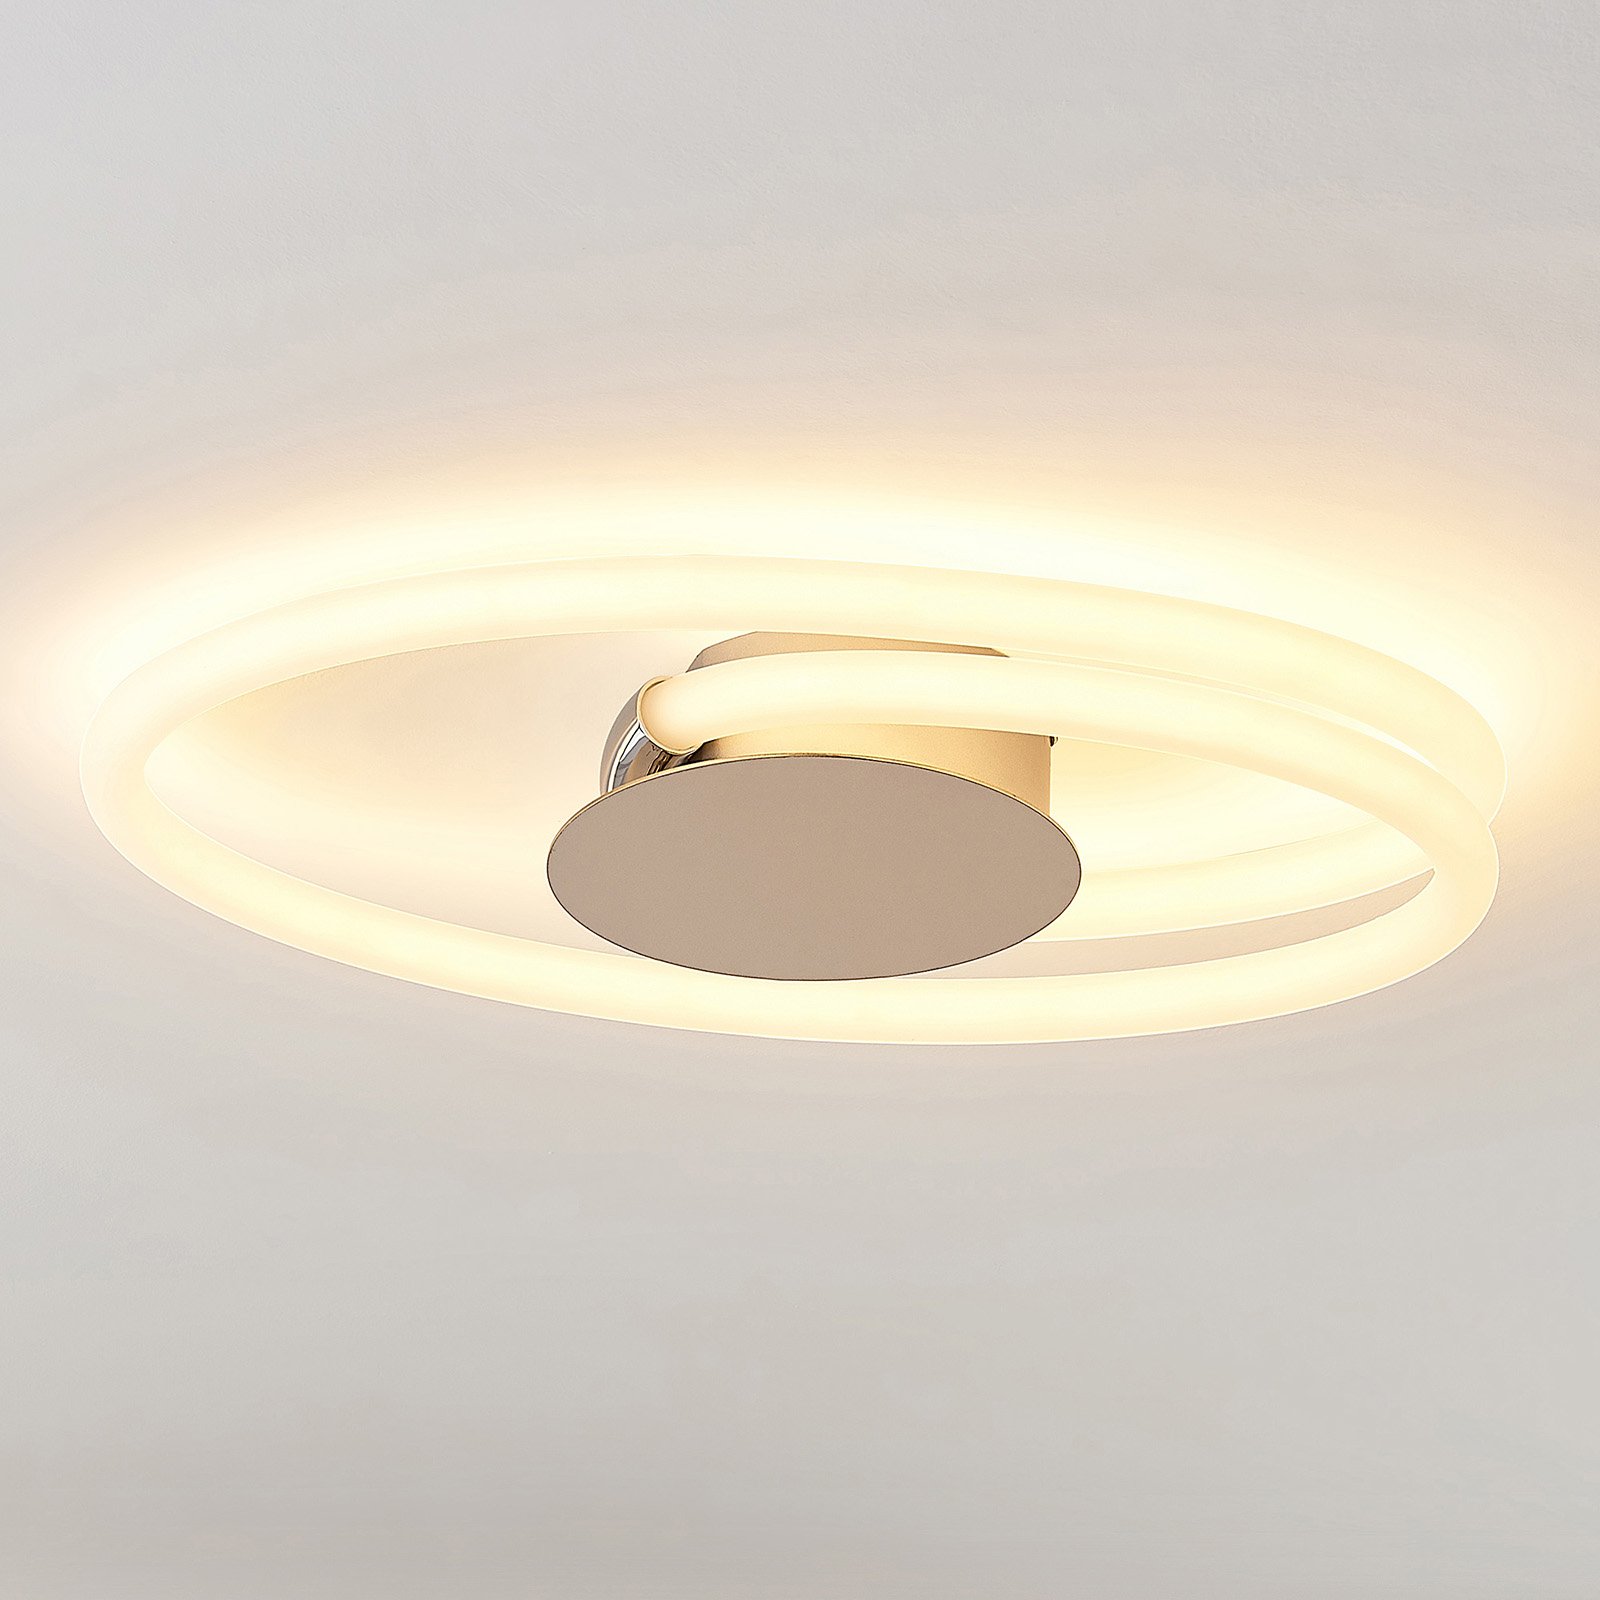 Lucande Ovala LED-Deckenleuchte, 53 cm